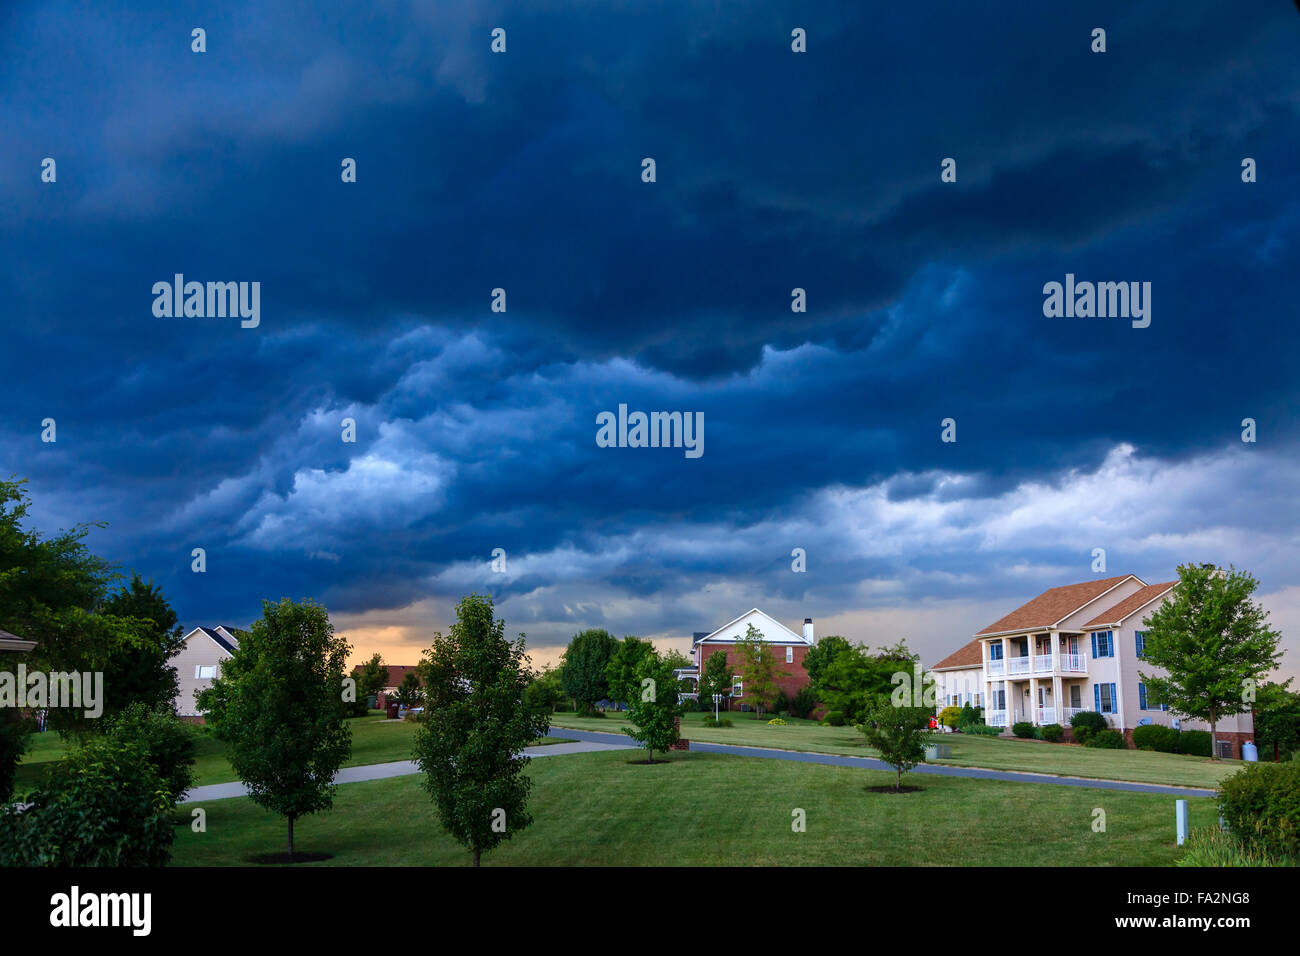 Nubes de tormenta en un barrio residencial en Kentucky Foto de stock